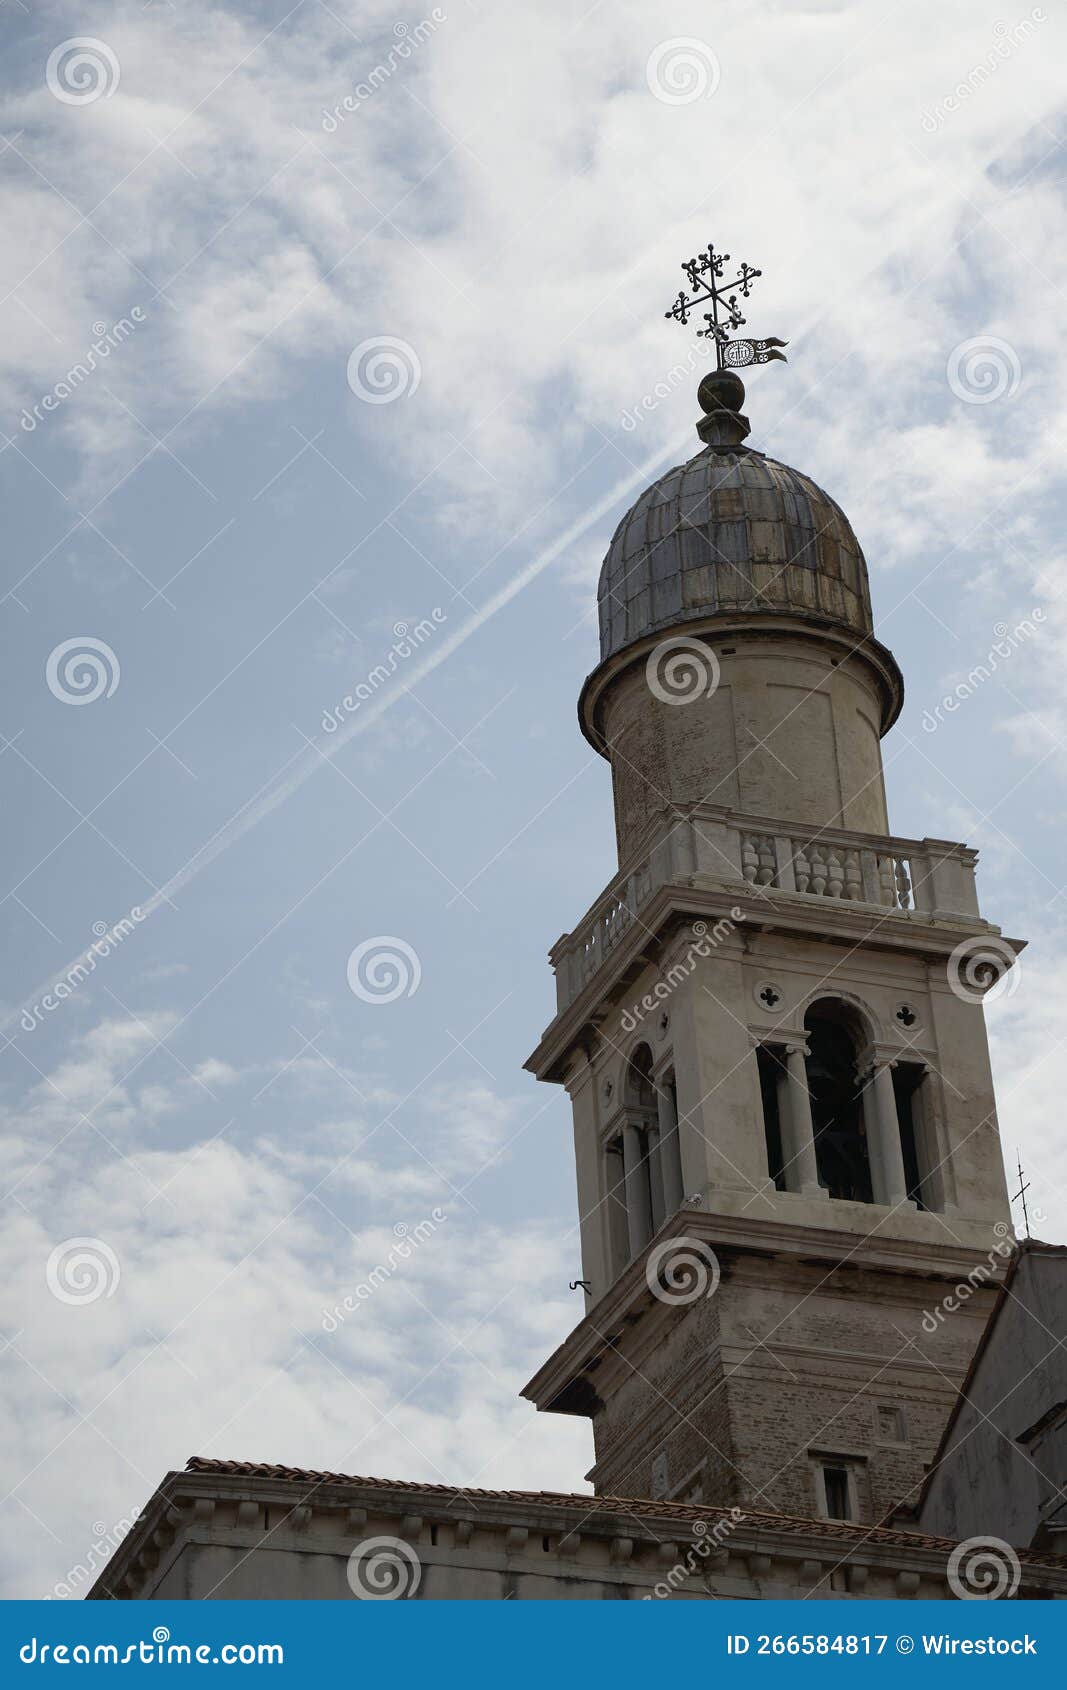 san pantalon church bell tower against the sky in venice, italy